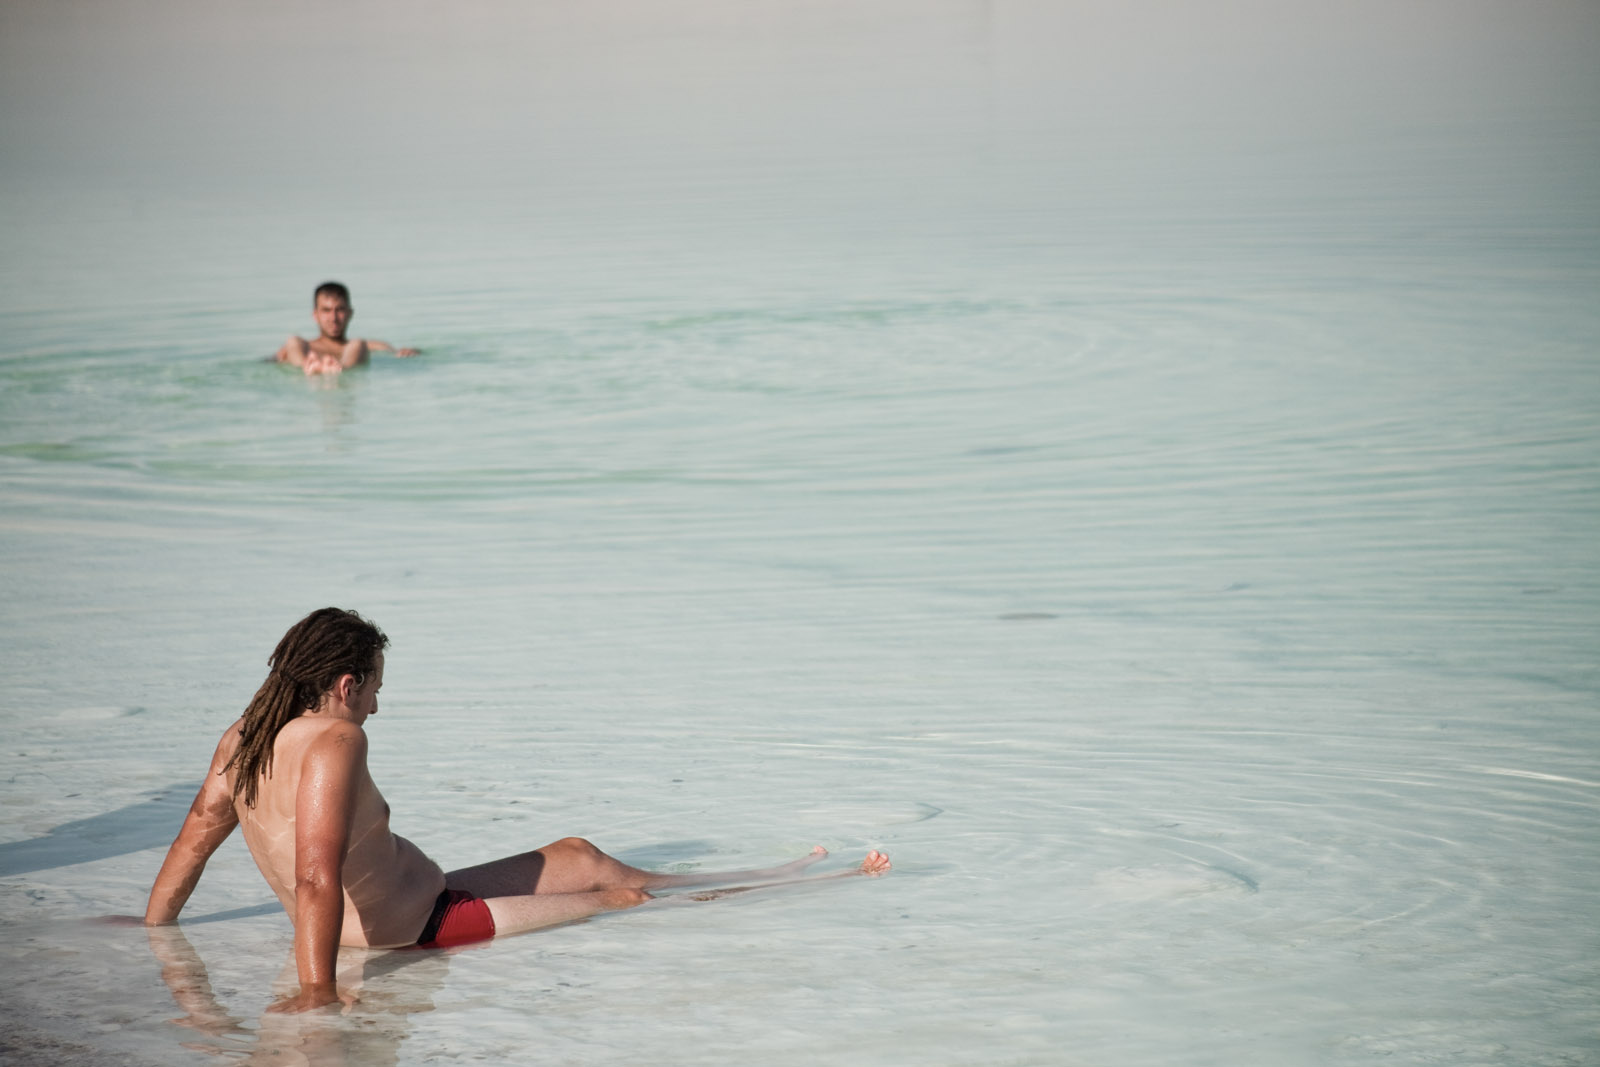 Des touristes se baignent dans la Mer Morte.